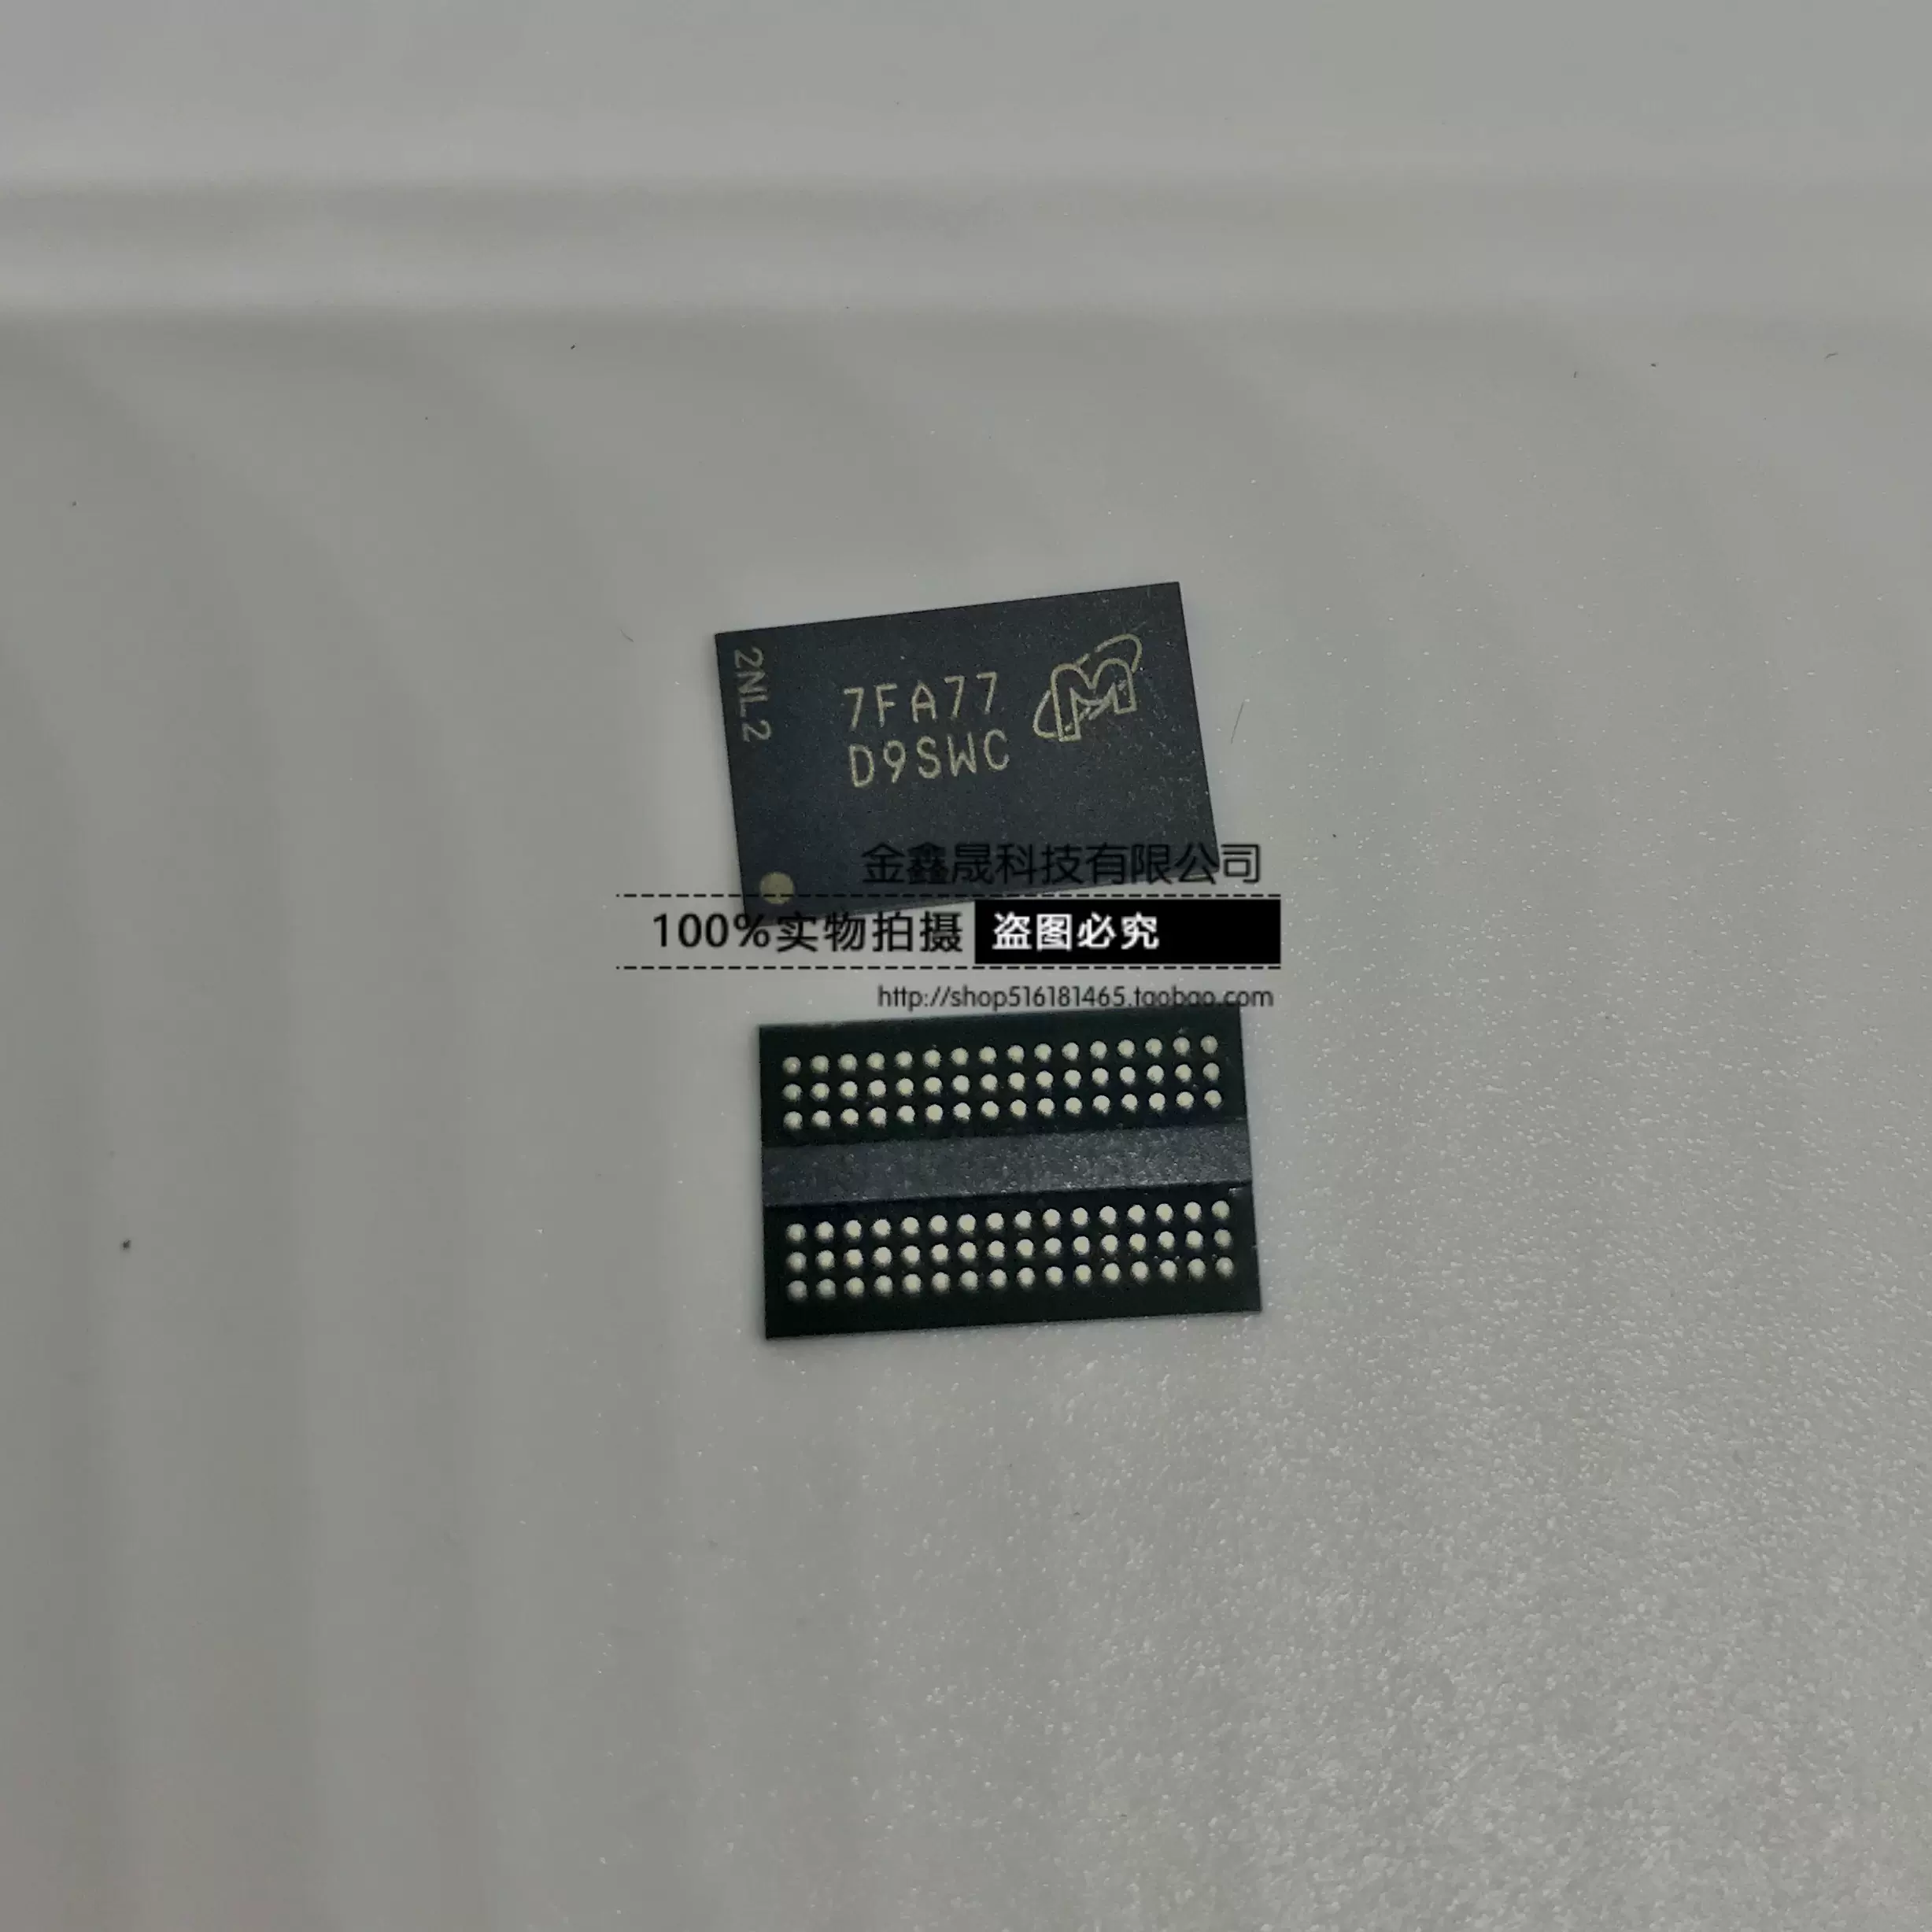 MT41K512M16HA-125AIT:A 丝印D9SWC 内存芯片DDR3颗粒存储器